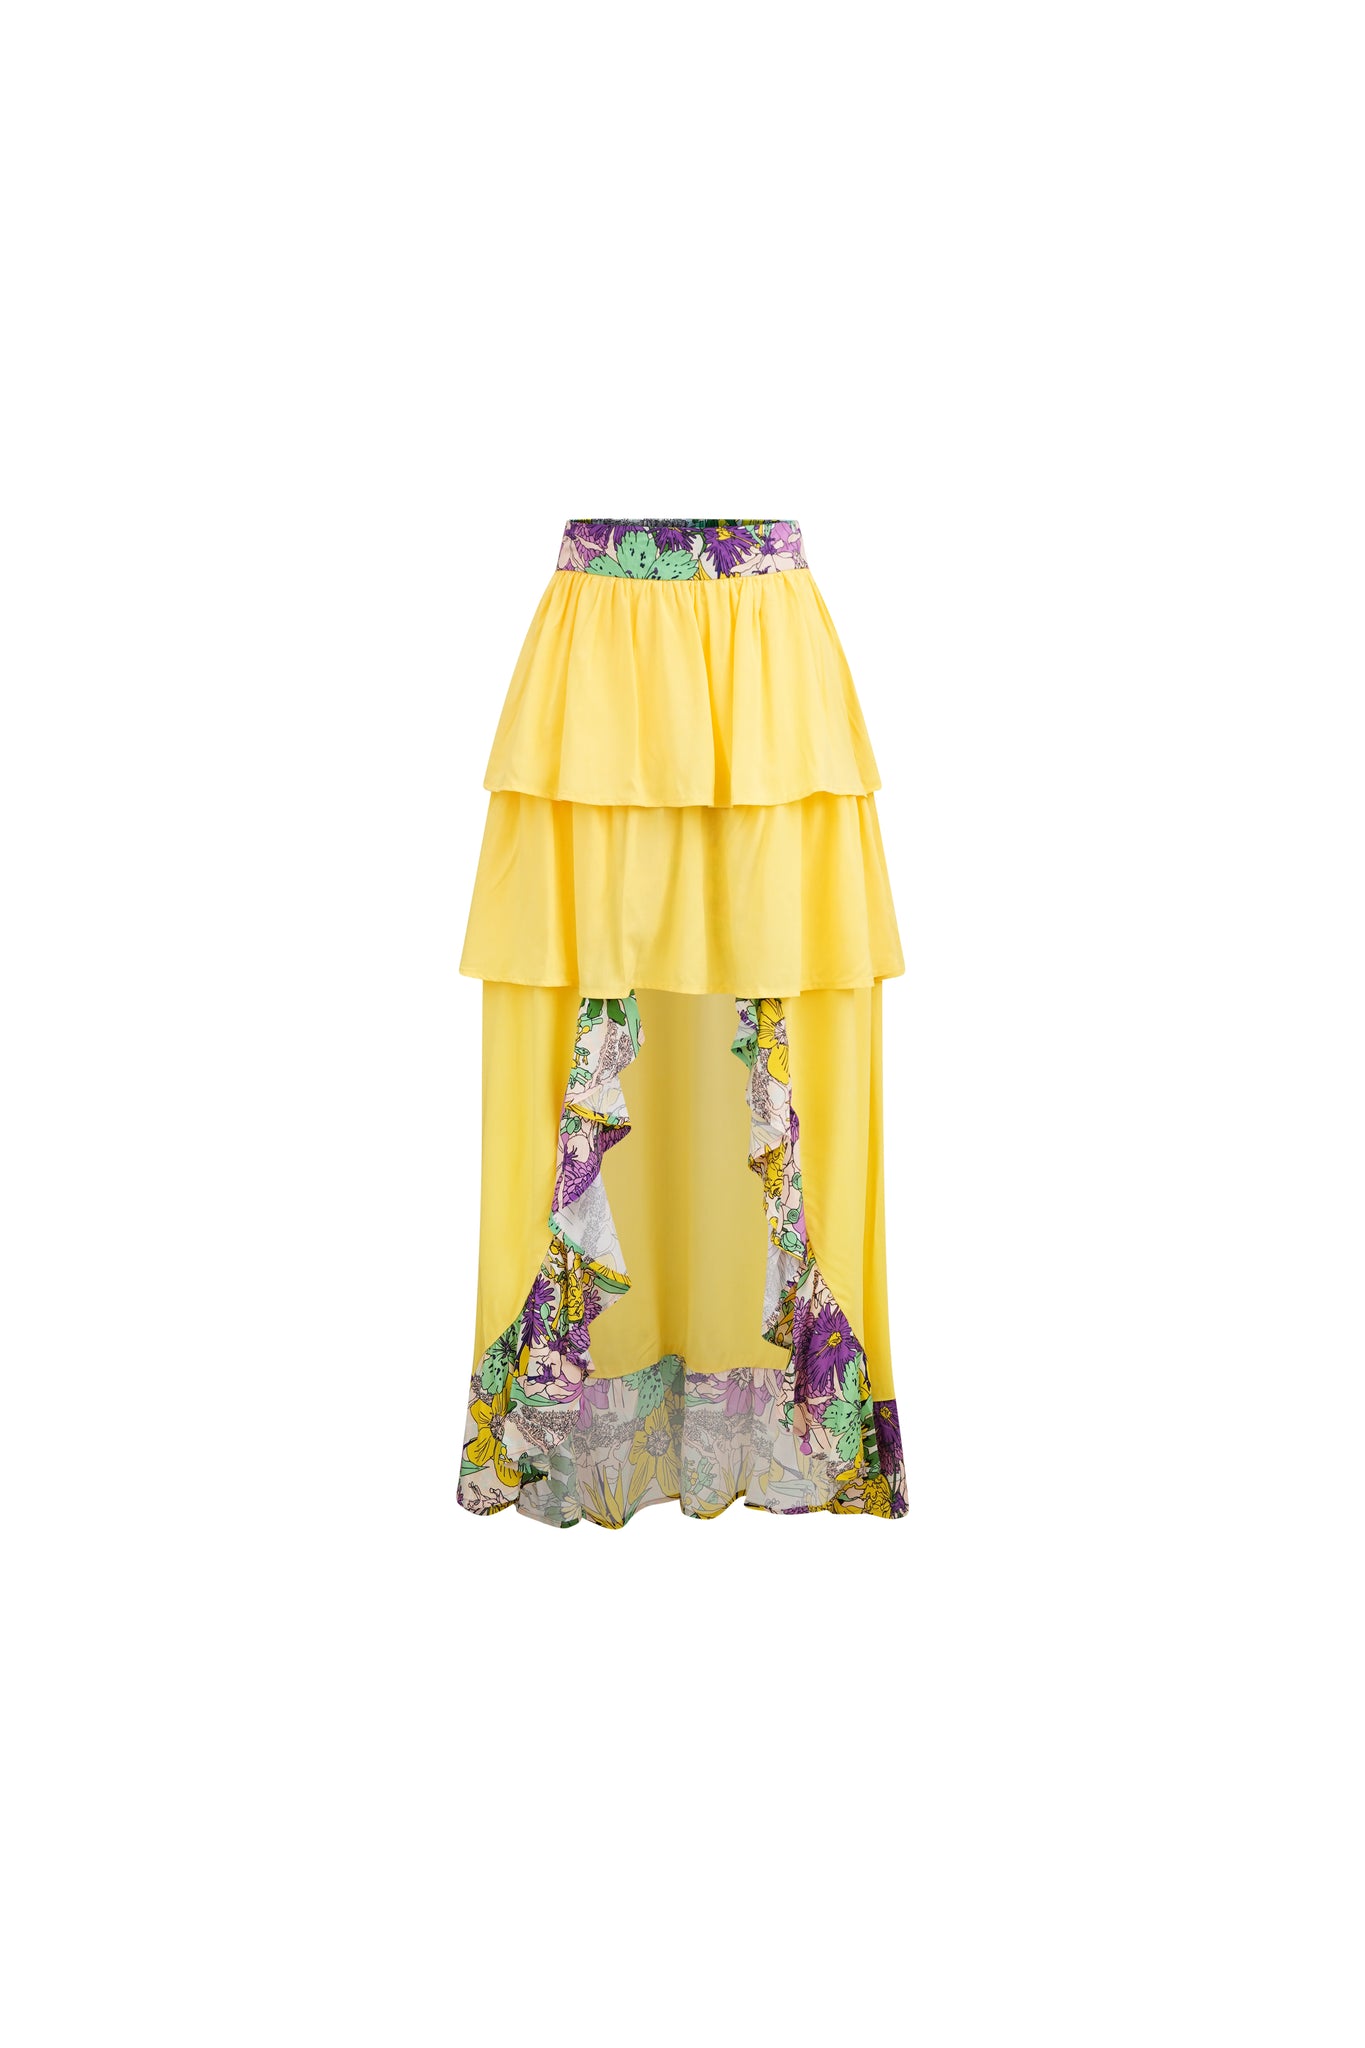 Safira Tiered Ruffle Asymmetric Flowy Skirt - Yellow Pink Garden Mosaic Print | ILC OA OG